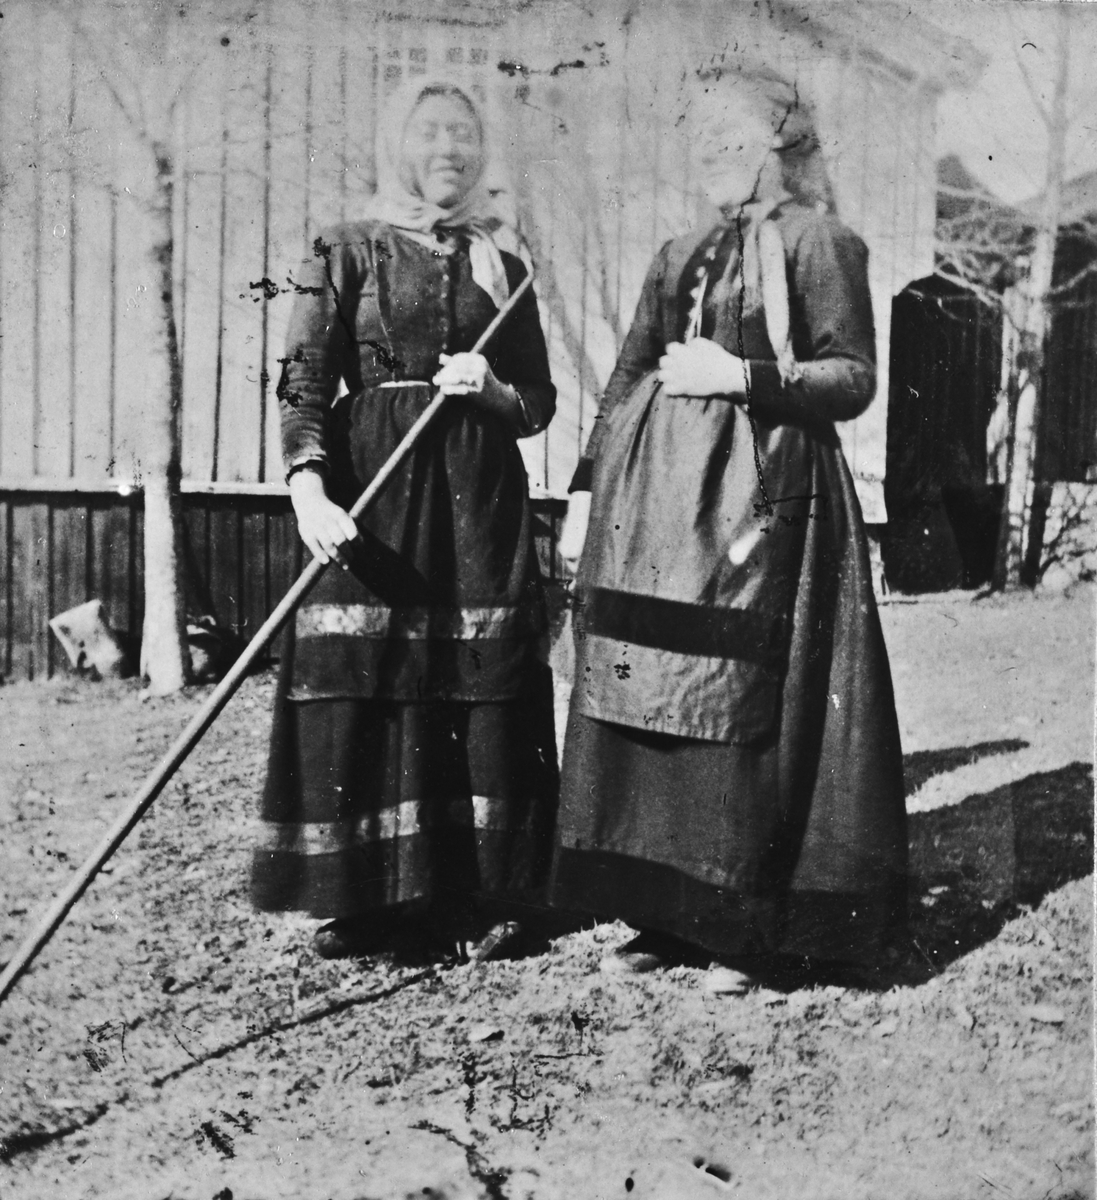 Kvinner på gårdstunet, Lunden gård, Hegglandsgrend, Fyresdal, Telemark, med stabburet i bakgrunnen. Kvinnen til høyre antas å være Kristi O. Haugen født 1850, fra nabogården nedre Haugen, et tun som i dag er slettet. Hun utvandret til USA i 1890 og kan ha blitt fotografert i forbindelse med avreisen. Kvinnen til venstre er antatt tjenestejenta Sigrid T. Toen (1876-1936) med skaut og rive.  Hun var en av flere barn av Torjus Auverson N. Toen (1850-1920), gift 1870 med Hege Halvorsdatter Geitestad (1850-1938) frå Rusto/Jordet i Valle. De var innerster og husfolk og bodde ulike steder omkring Lunden. Sigrid ble gift 1903 på Tveiten i Hauggrend.
Innsendt kommentar: "Ho med riva var tydeleg ei tenestegjente, ho hadde ikkje "tullplagg", men skaut. Ikkje knappar framme. Snipp på skautet fram som då vart litt meir til pynt. Ho måtte ha høg status på garden då ho vart fotografera i tunet."